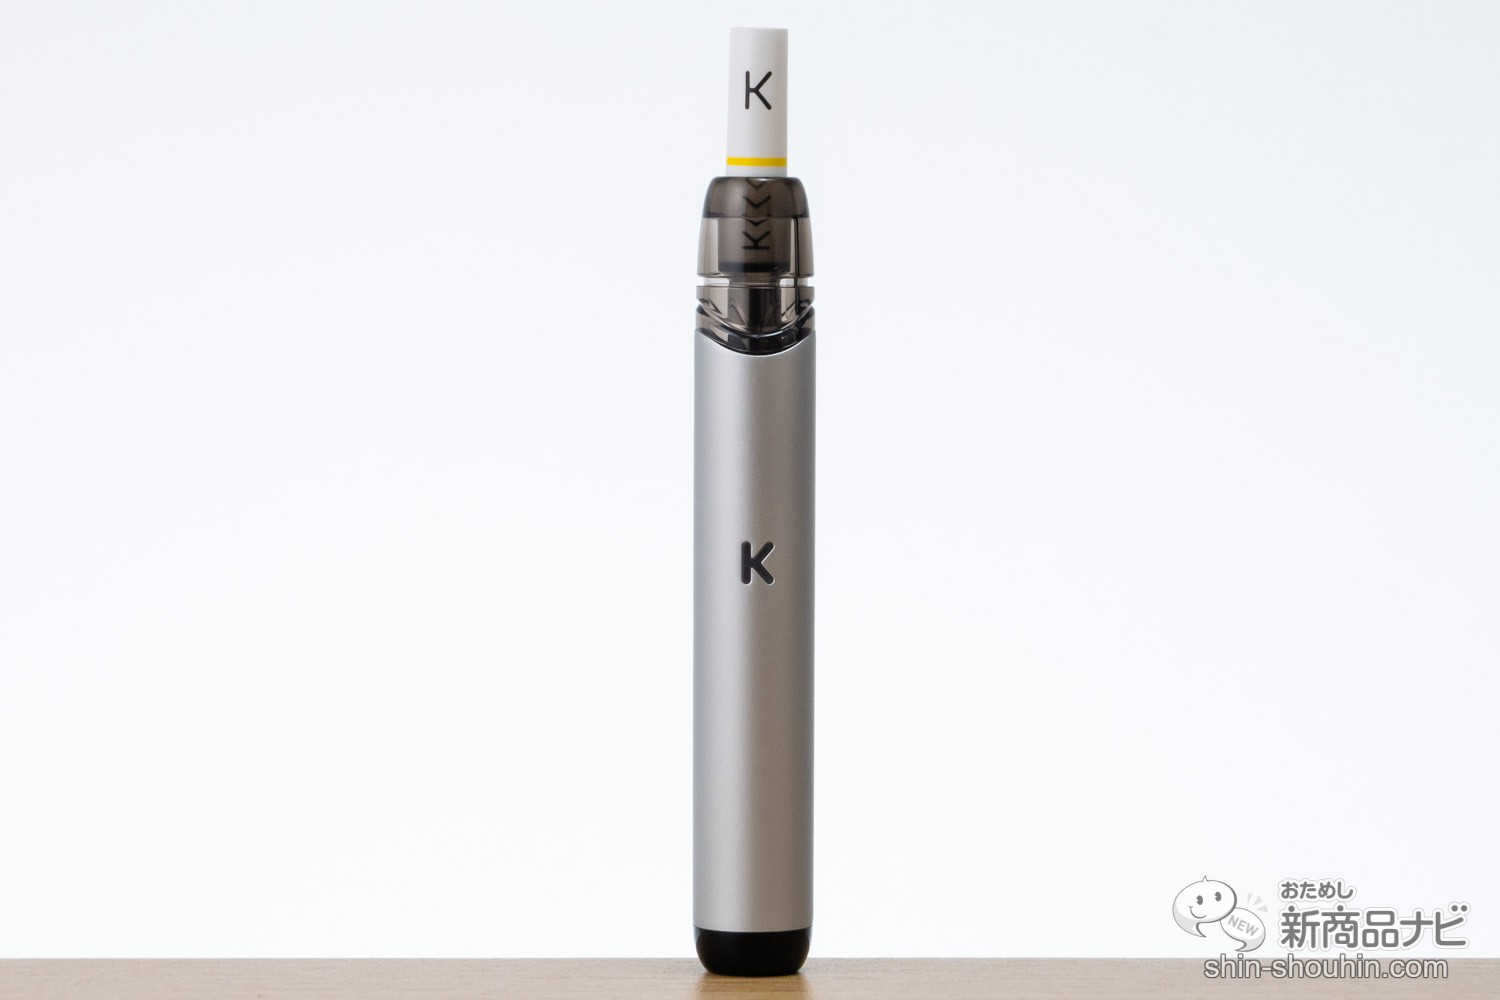 VAPE フィルターチップで加熱式タバコ感覚を再現 KIWI Pen - タバコグッズ